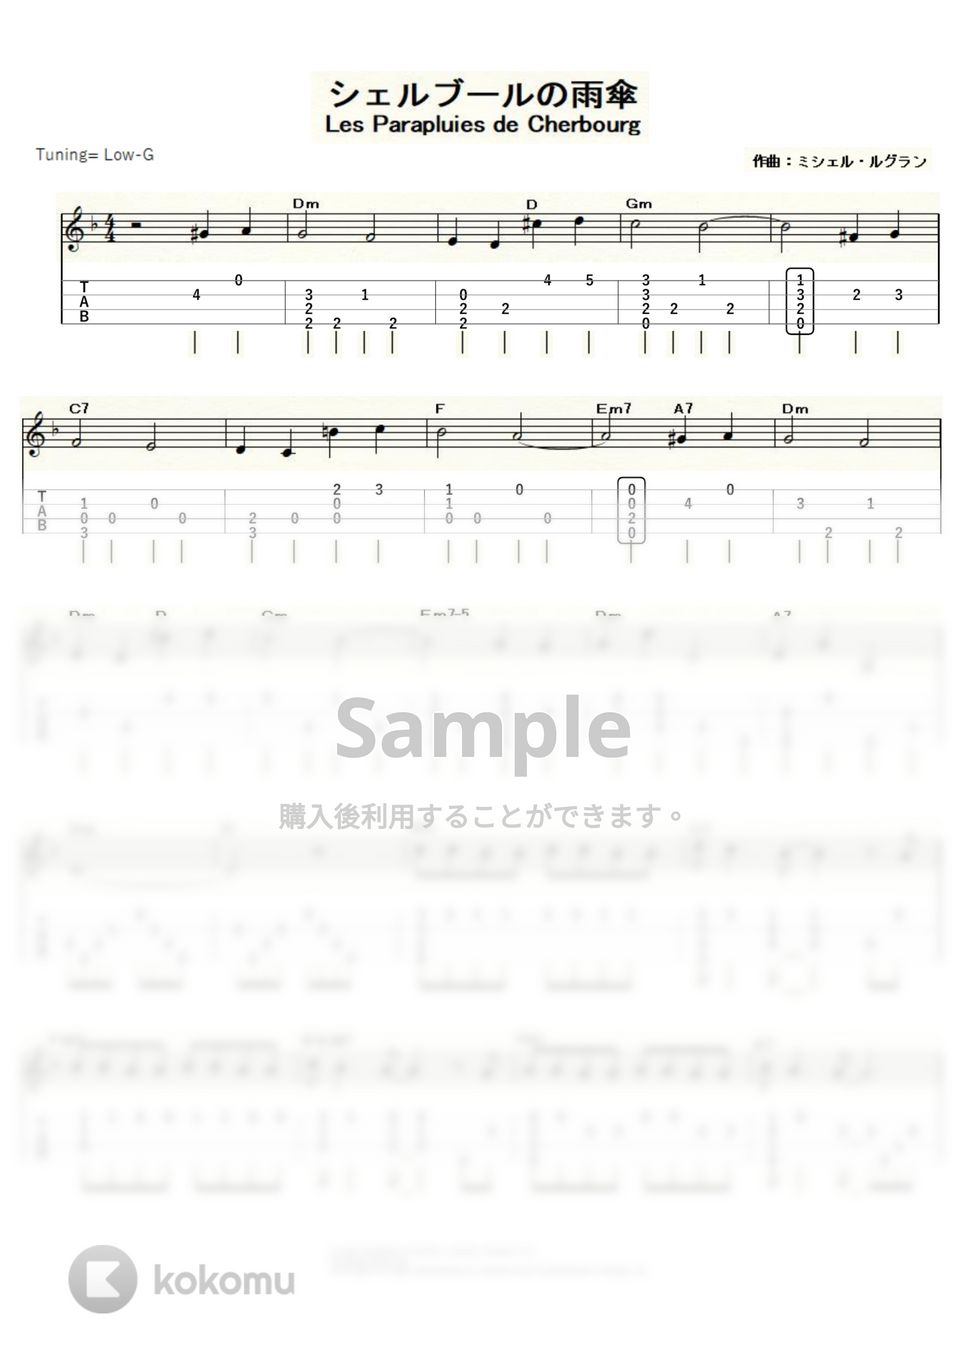 ミシェル・ルグラン - シェルブールの雨傘 (ｳｸﾚﾚｿﾛ/Low-G/中級) by ukulelepapa